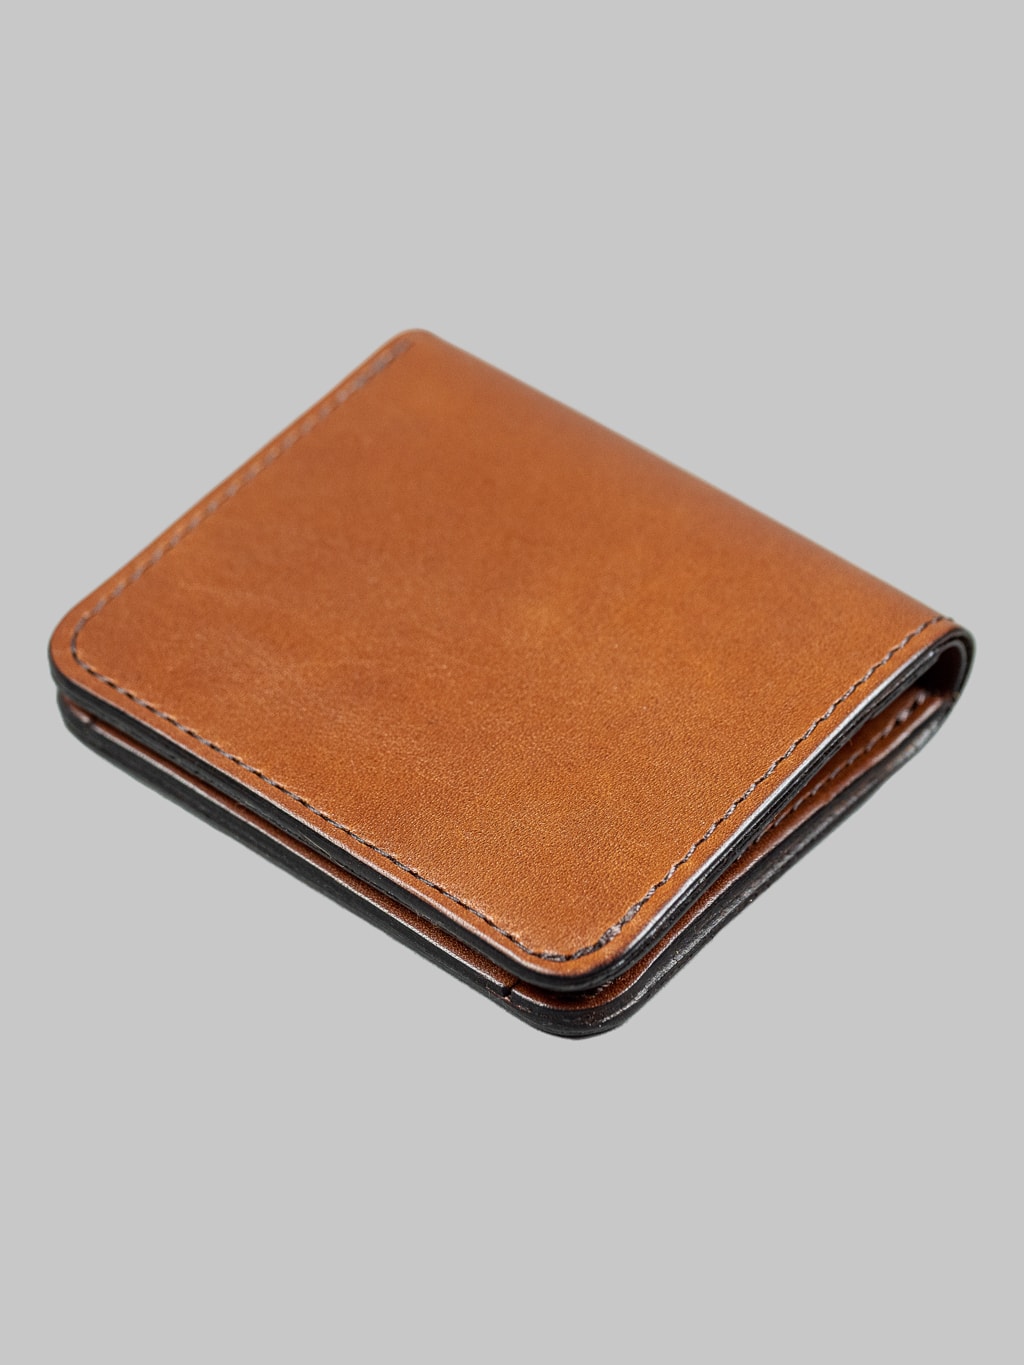 Studio Dartisan brown leather mini wallet cowhide